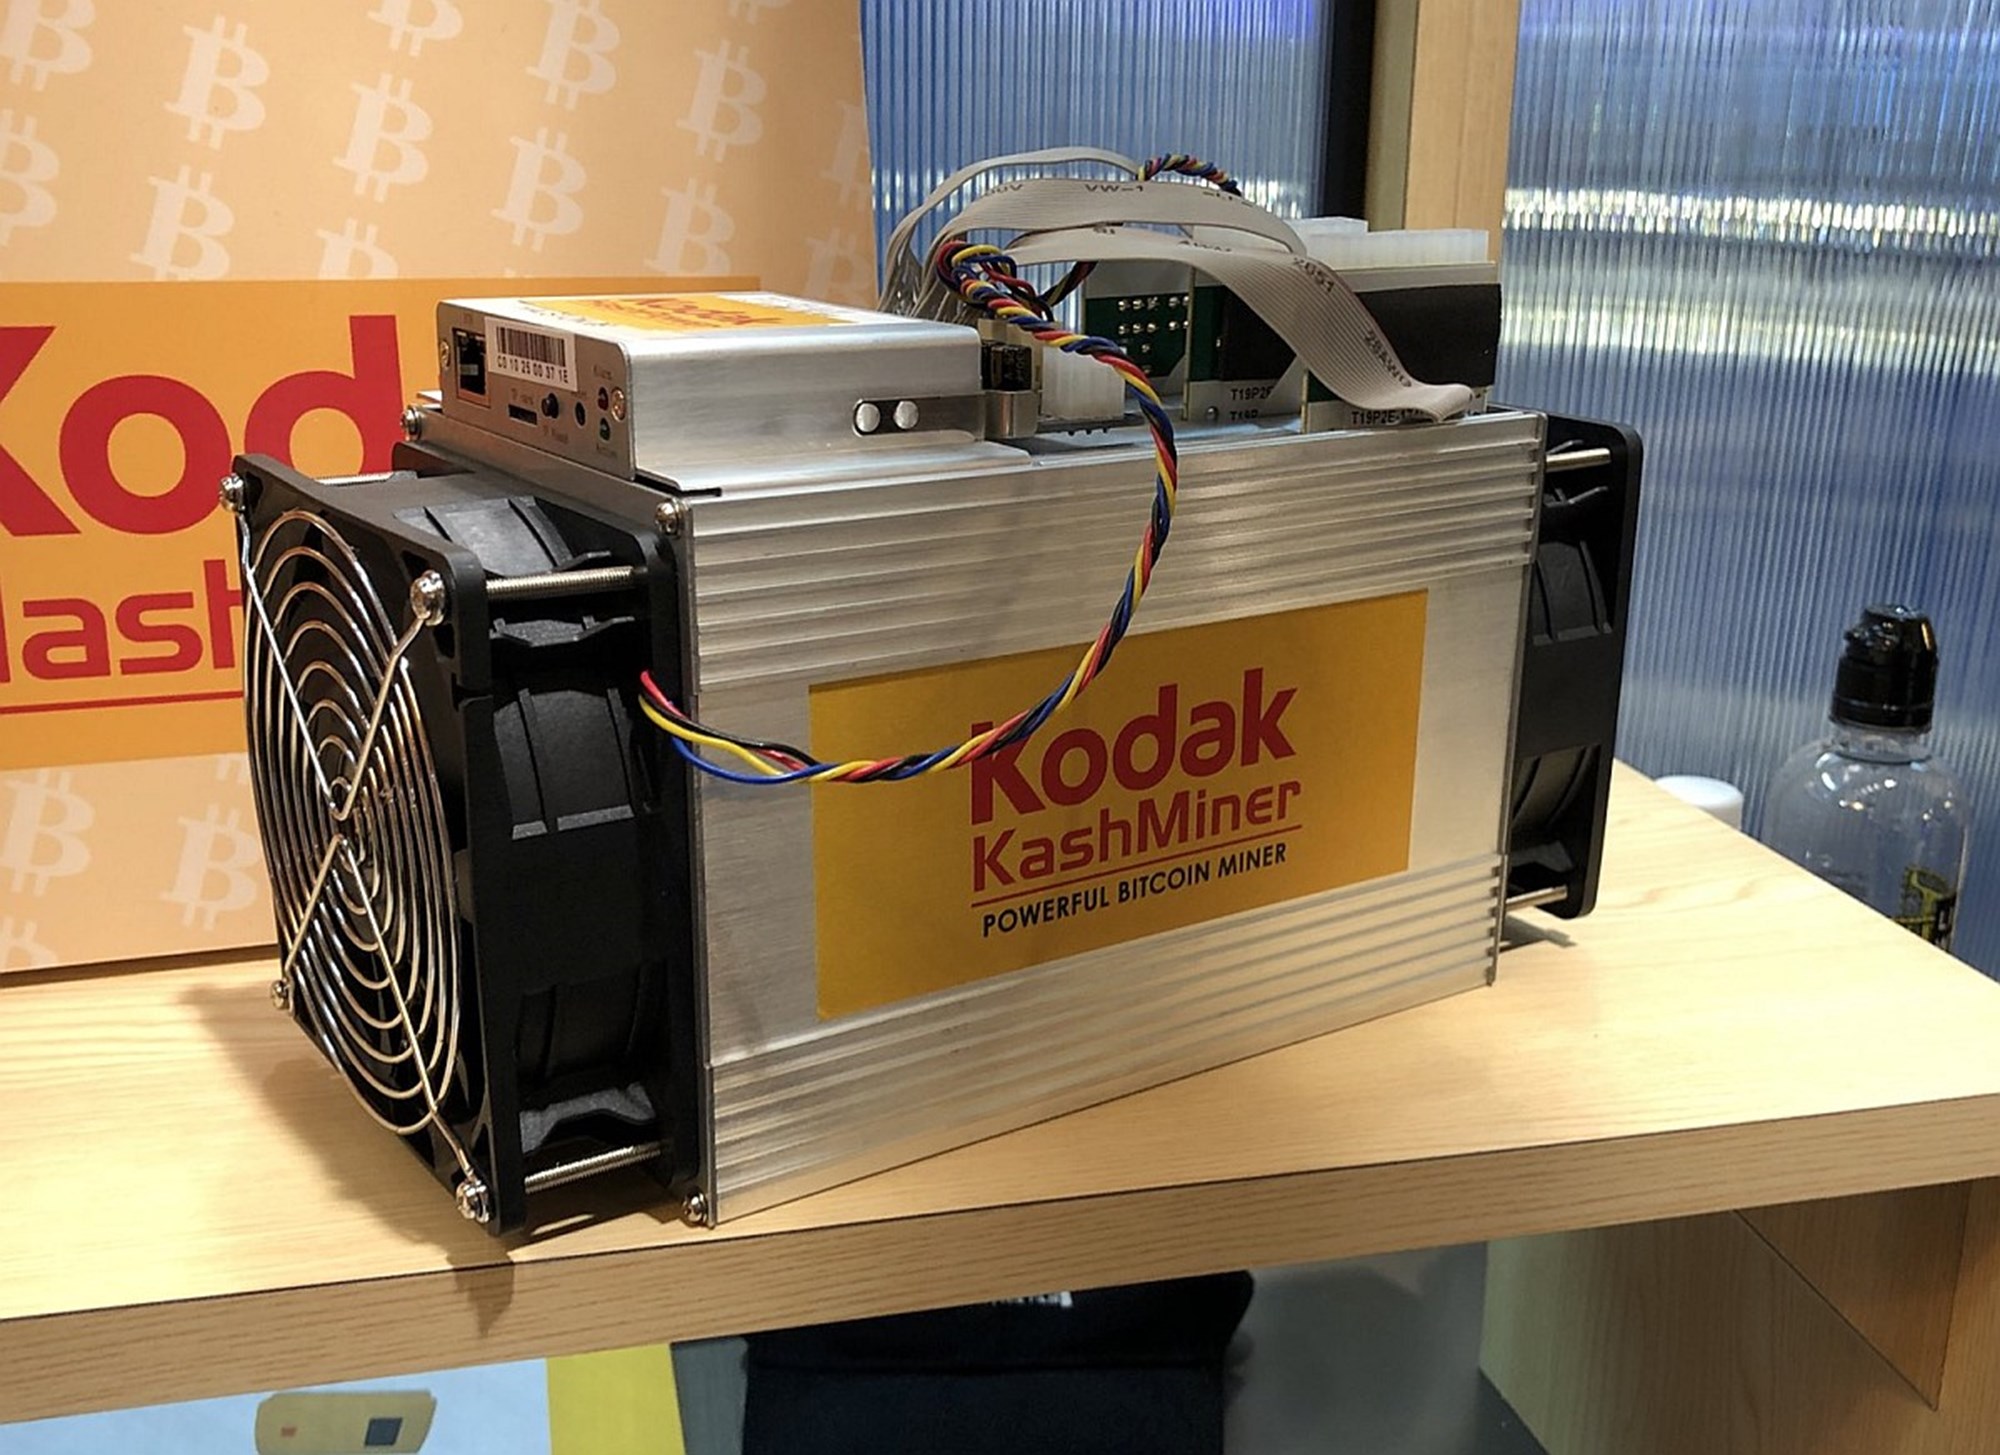 Kodak bitcoin miner 0.0022699 bitcoin